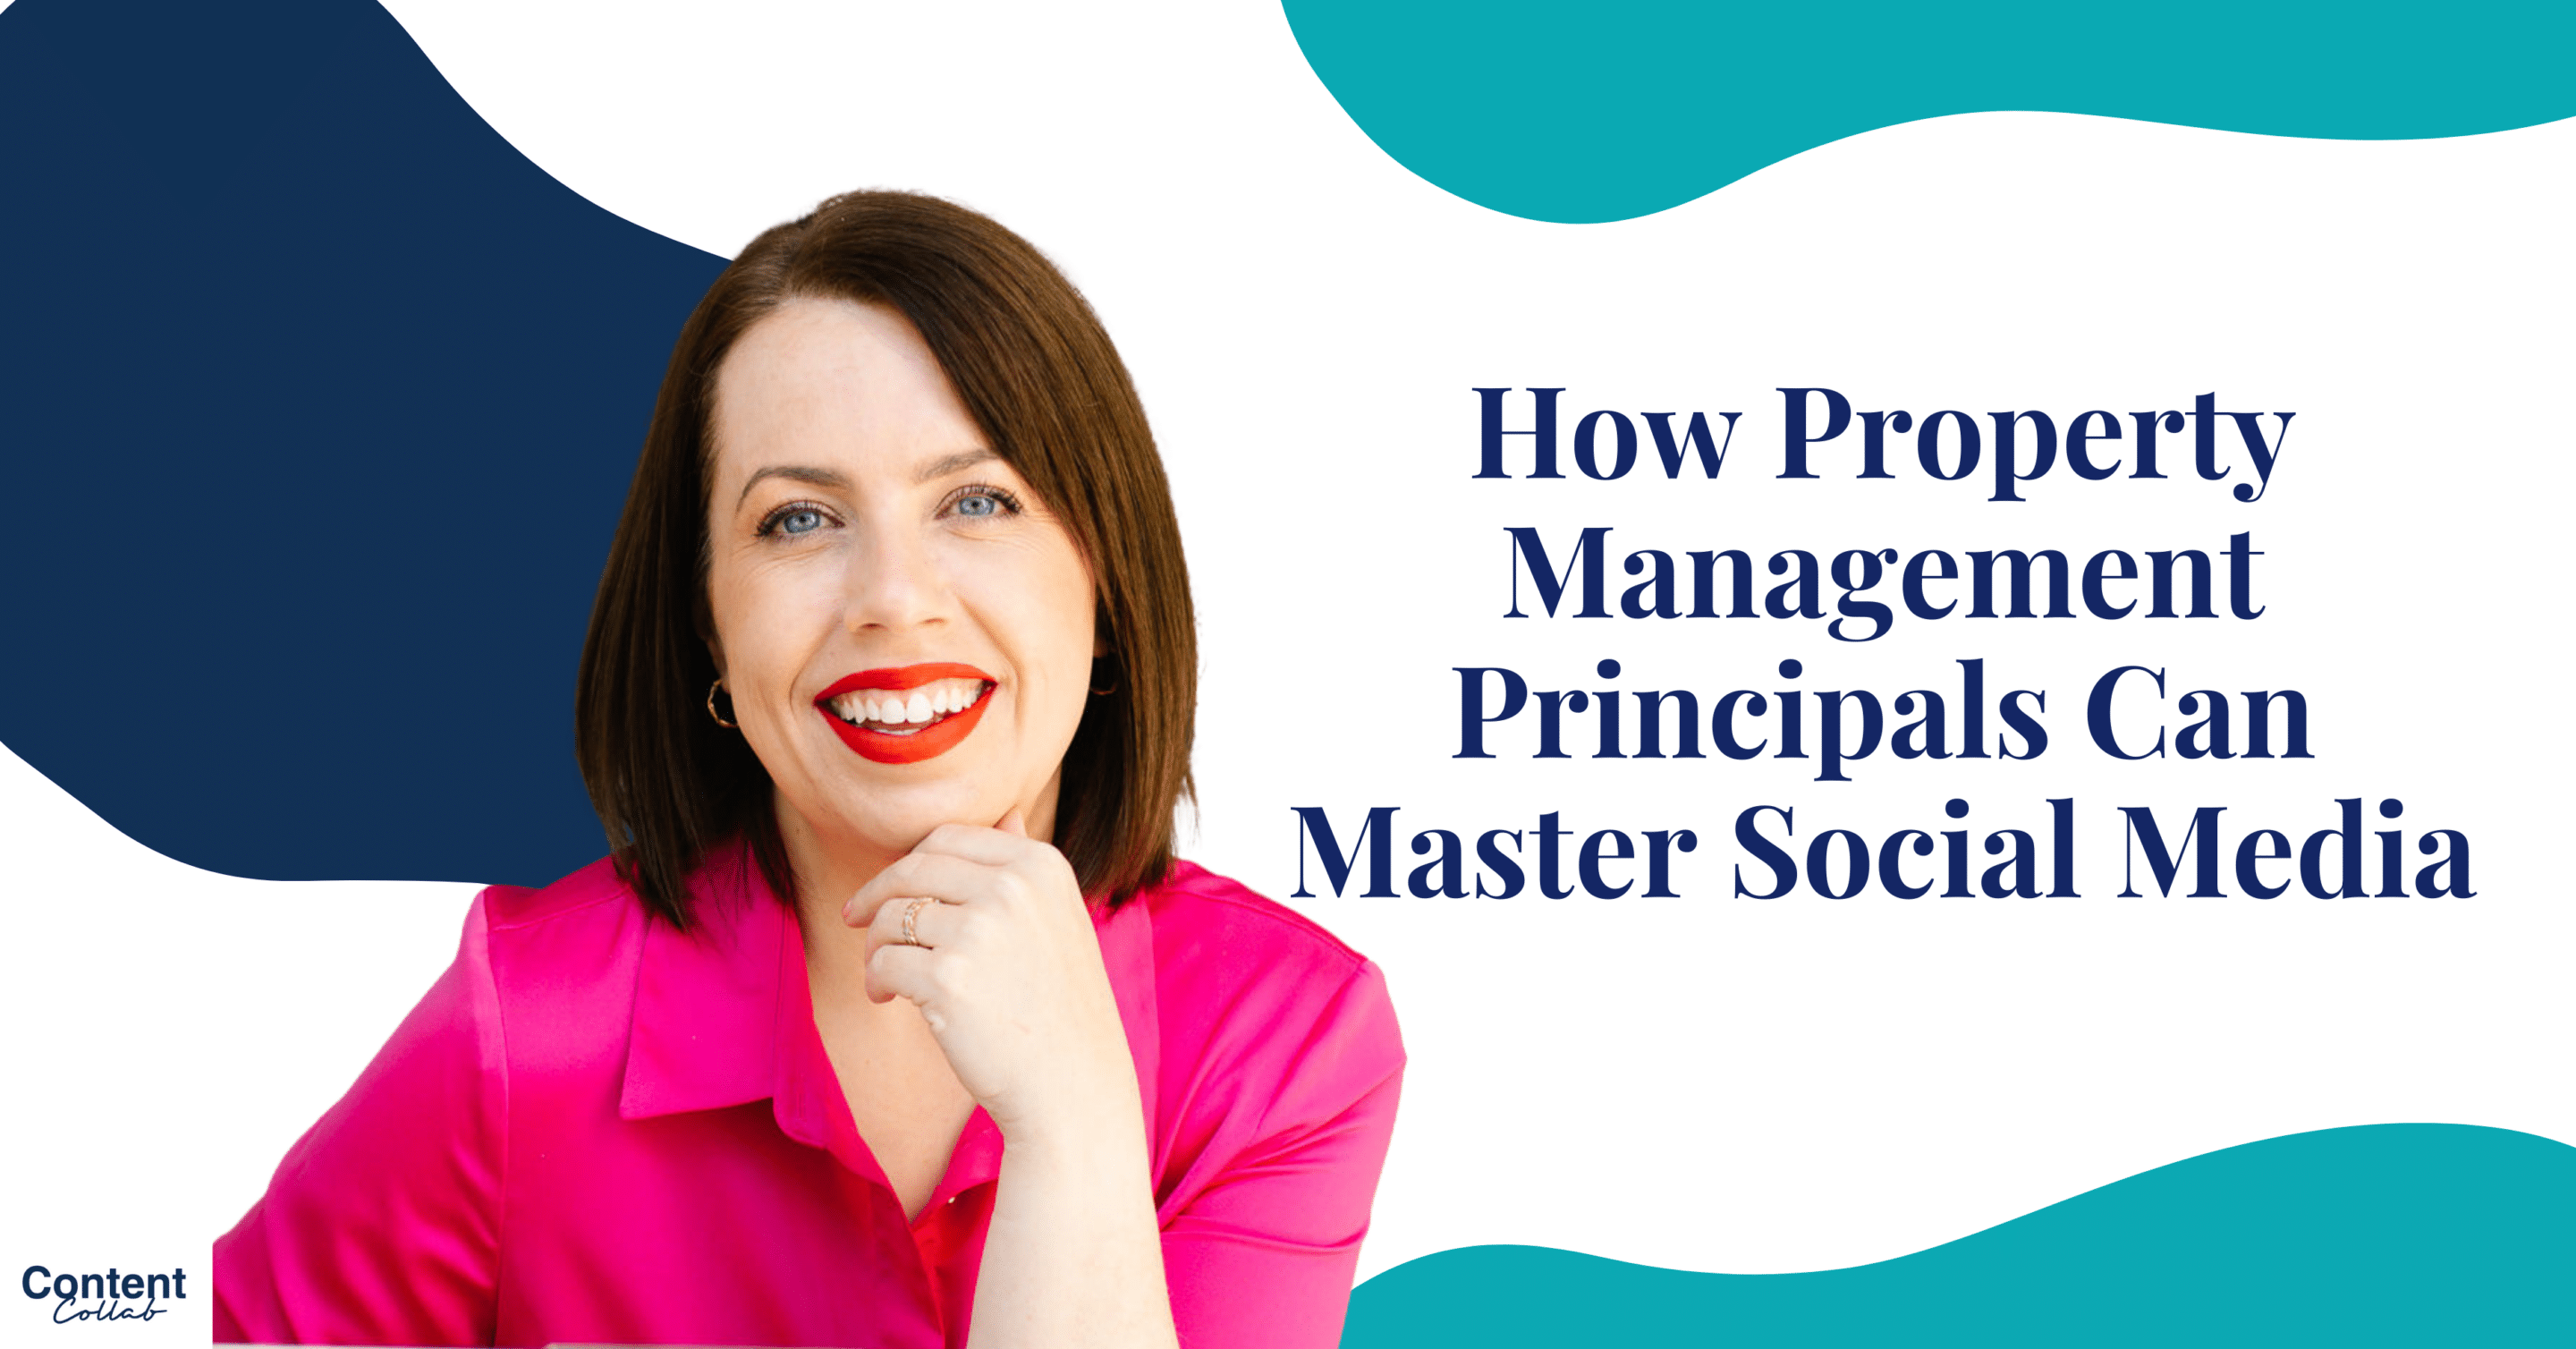 How Property Management Principals Can Master Social Media